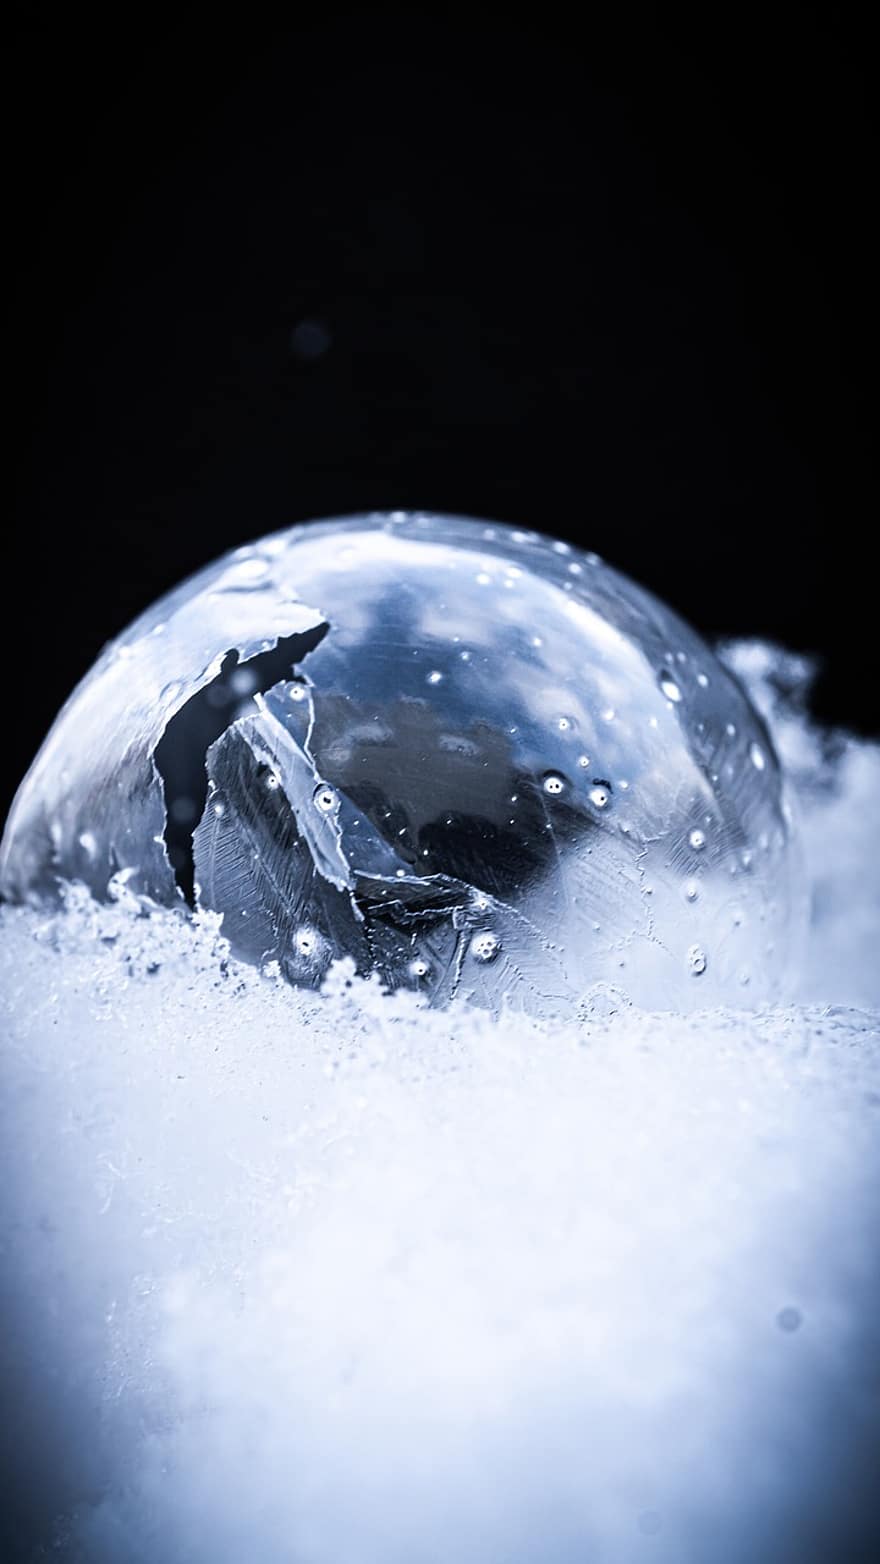 buborék, fagyott, hó, jég, jégkristályok, fagy, téli, szappanbuborék, labda, hideg, havas